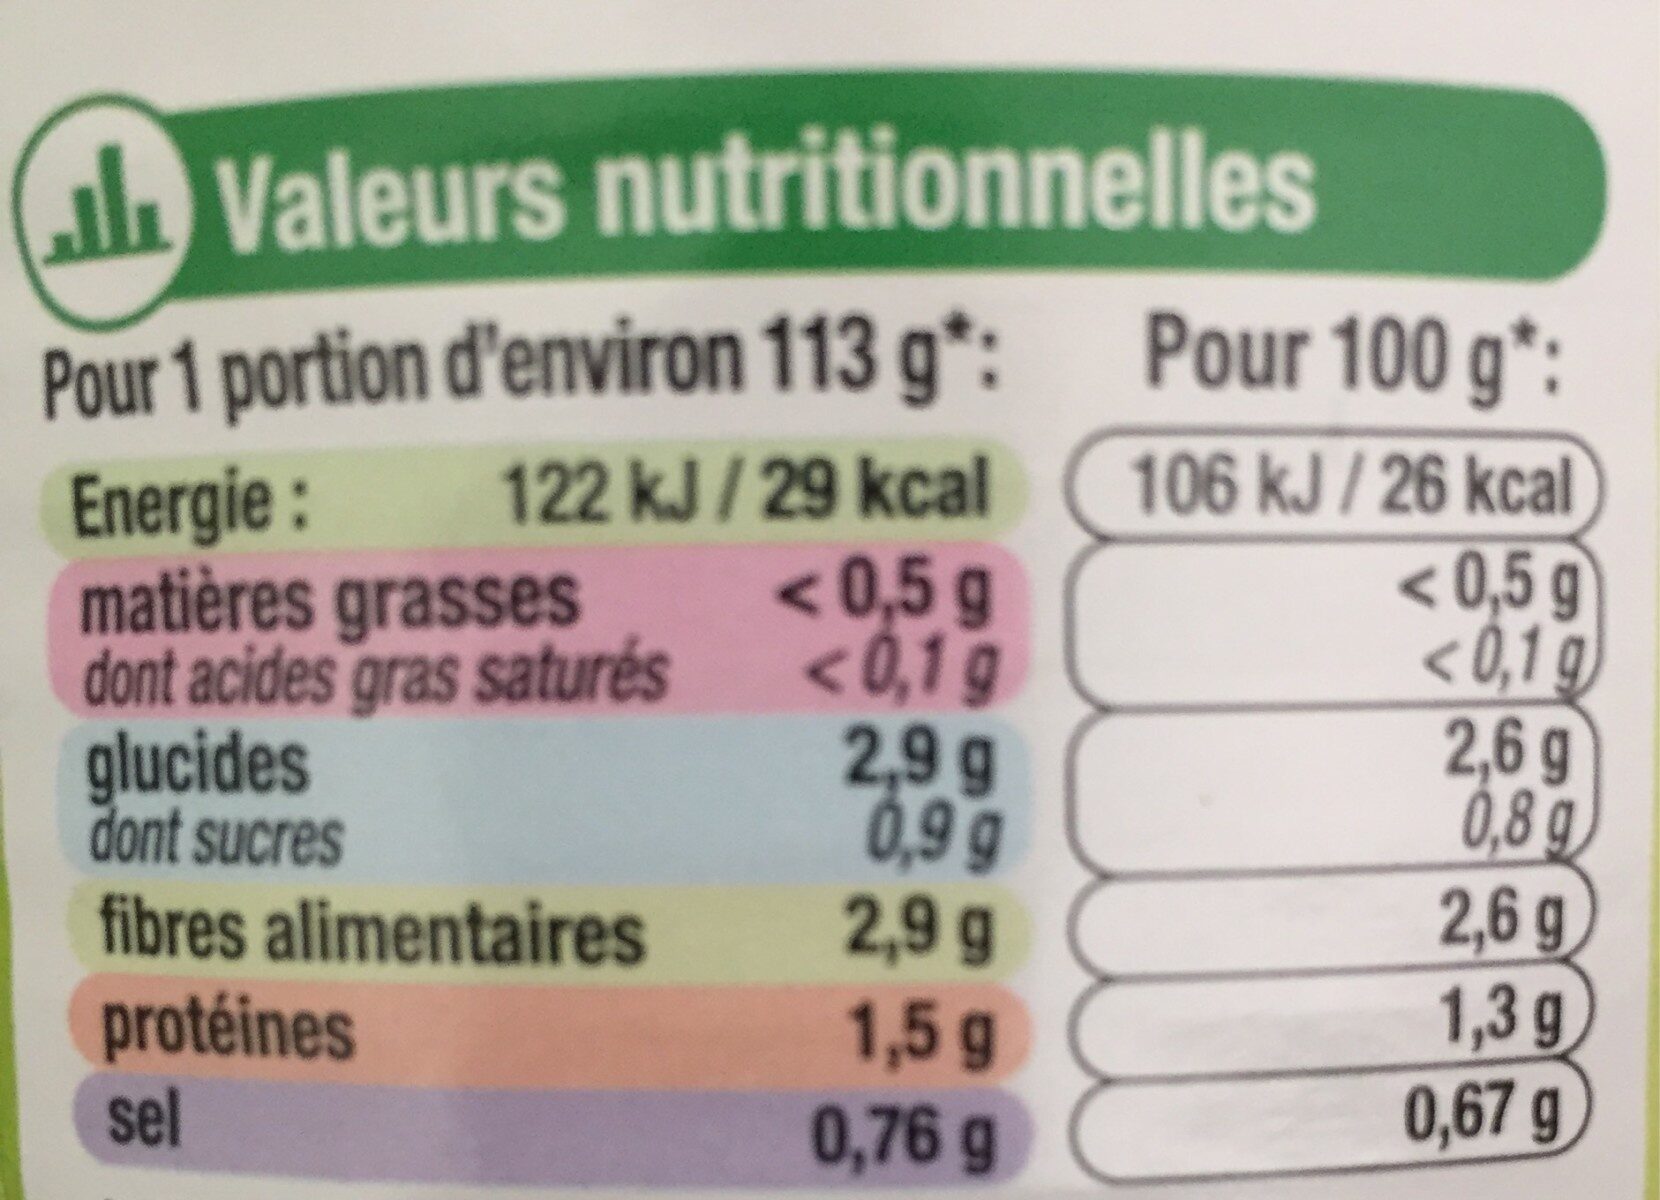 Paté miam - Nutrition facts - fr